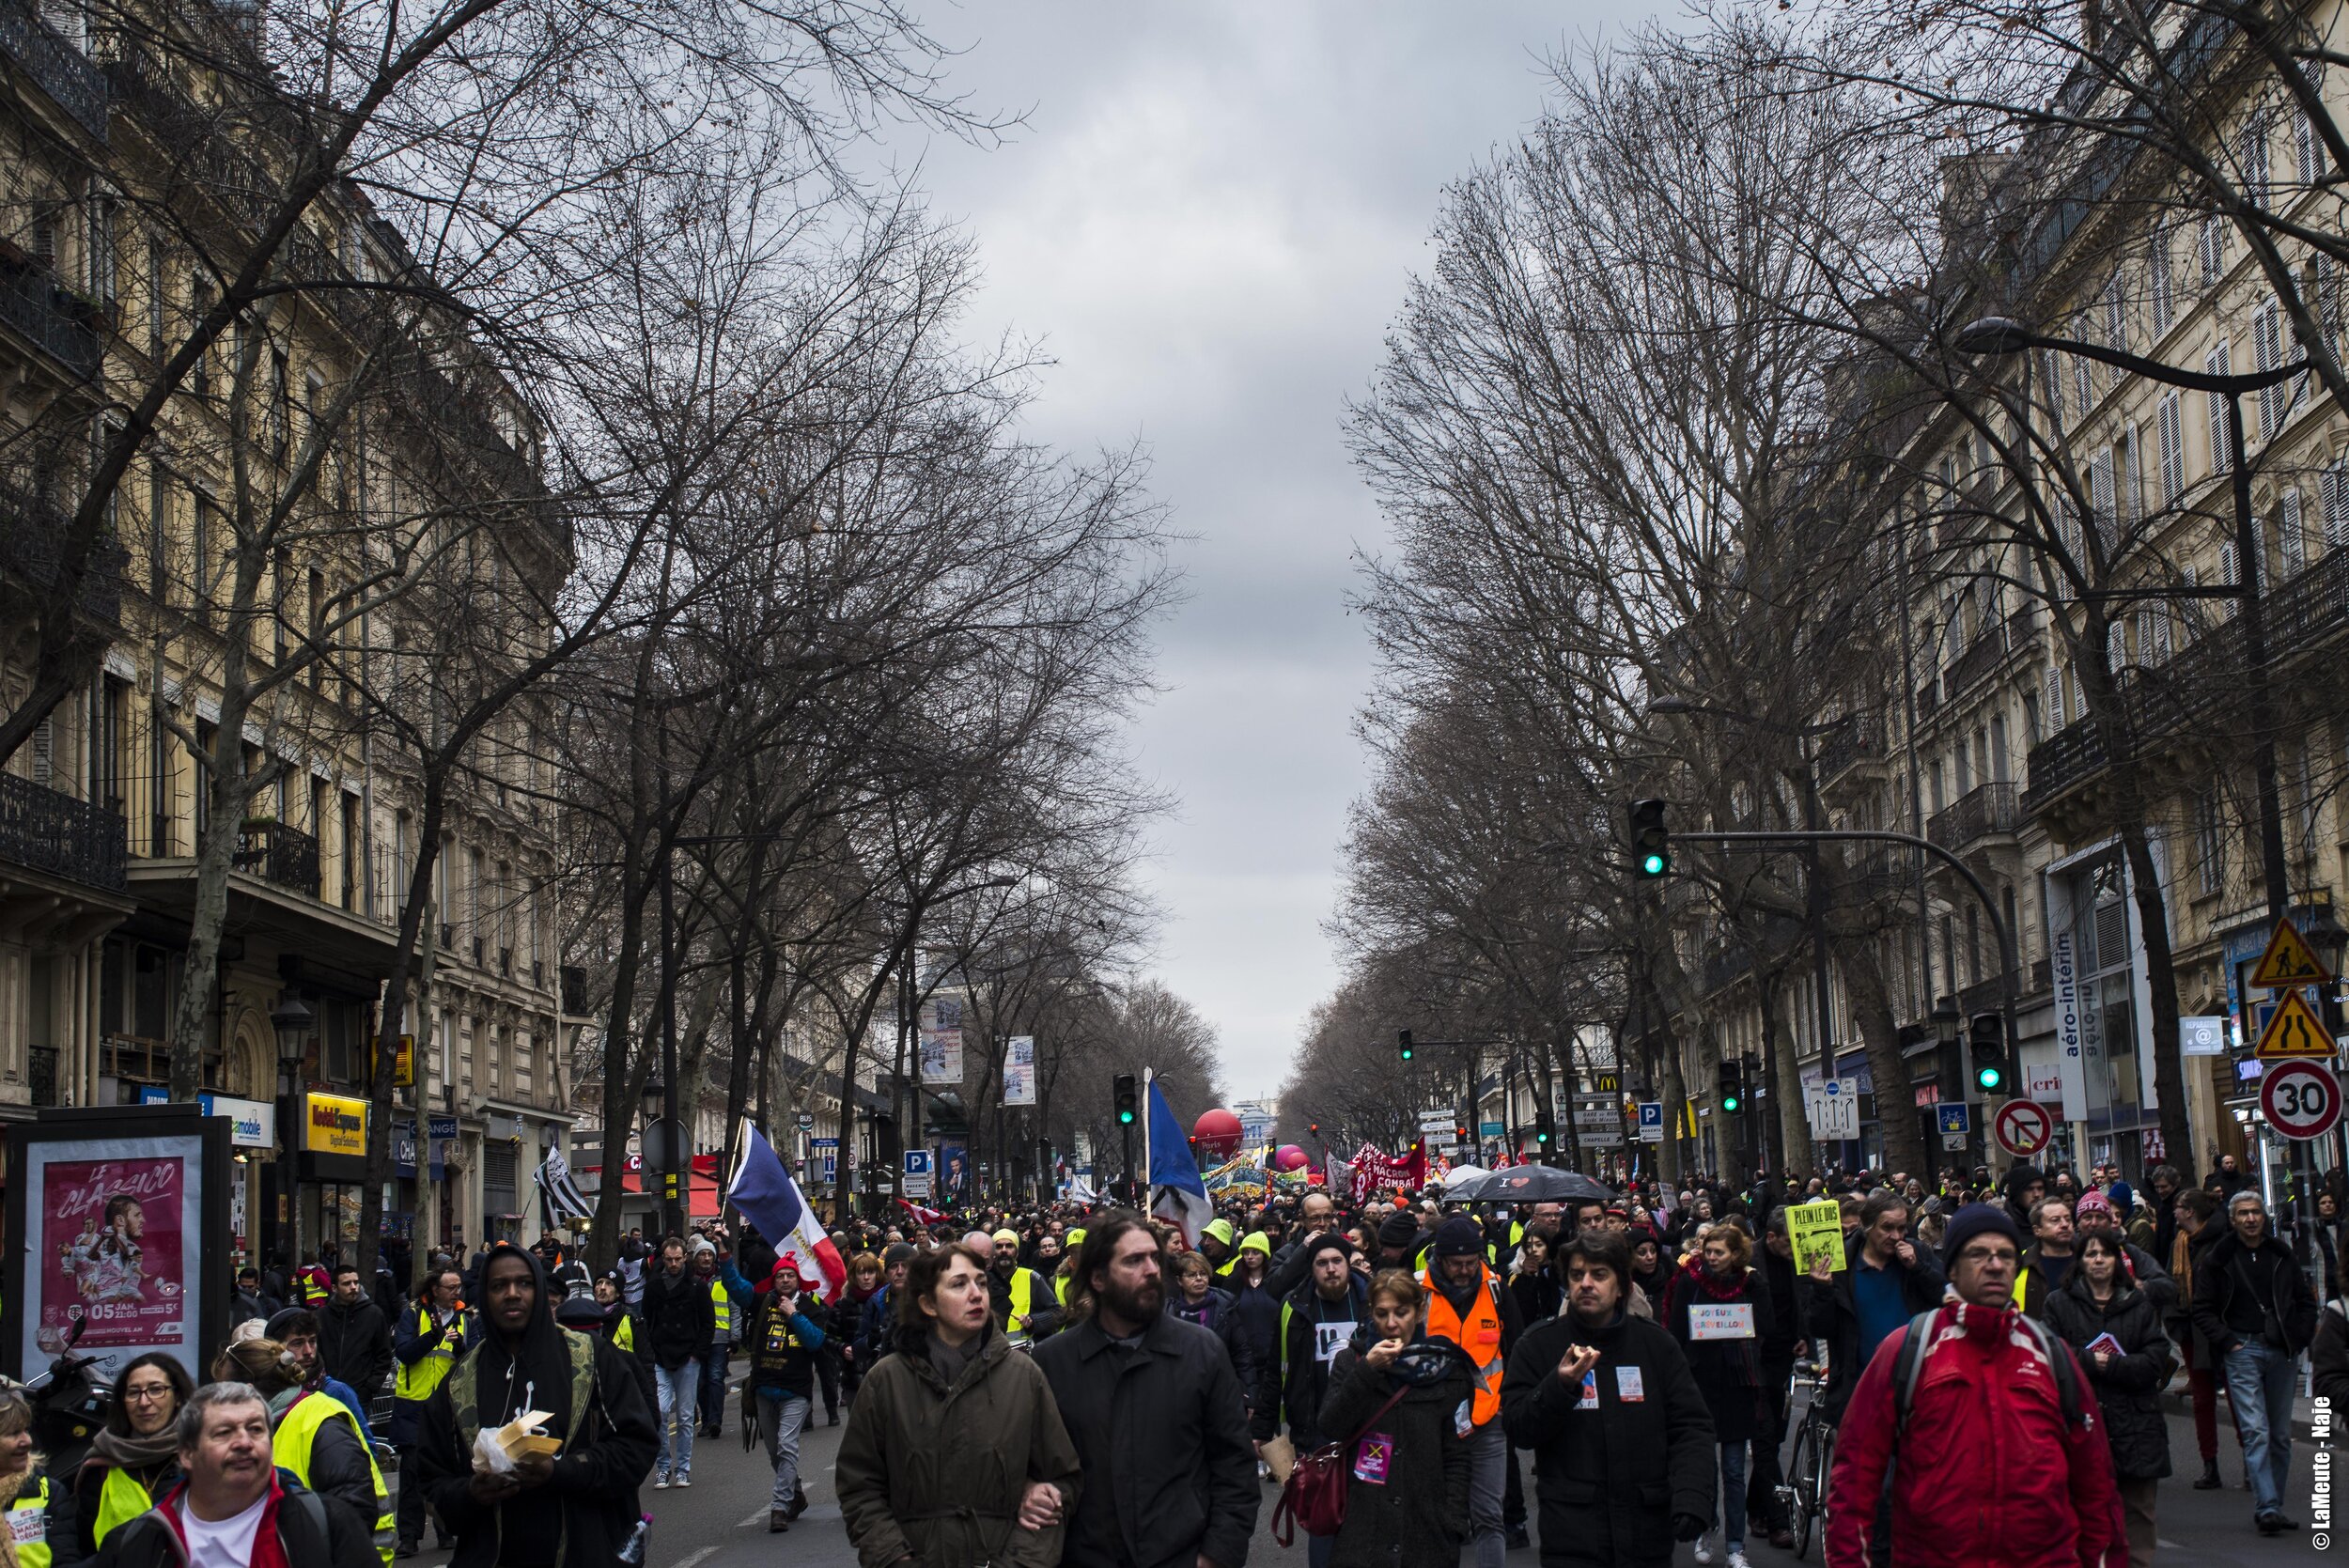   La journée finie, la préfecture annoncera 4500 manifestant•es. À observer le boulevard de Magenta en début de marche, on aurait facilement penser le double.  ©LaMeute - Naje.      